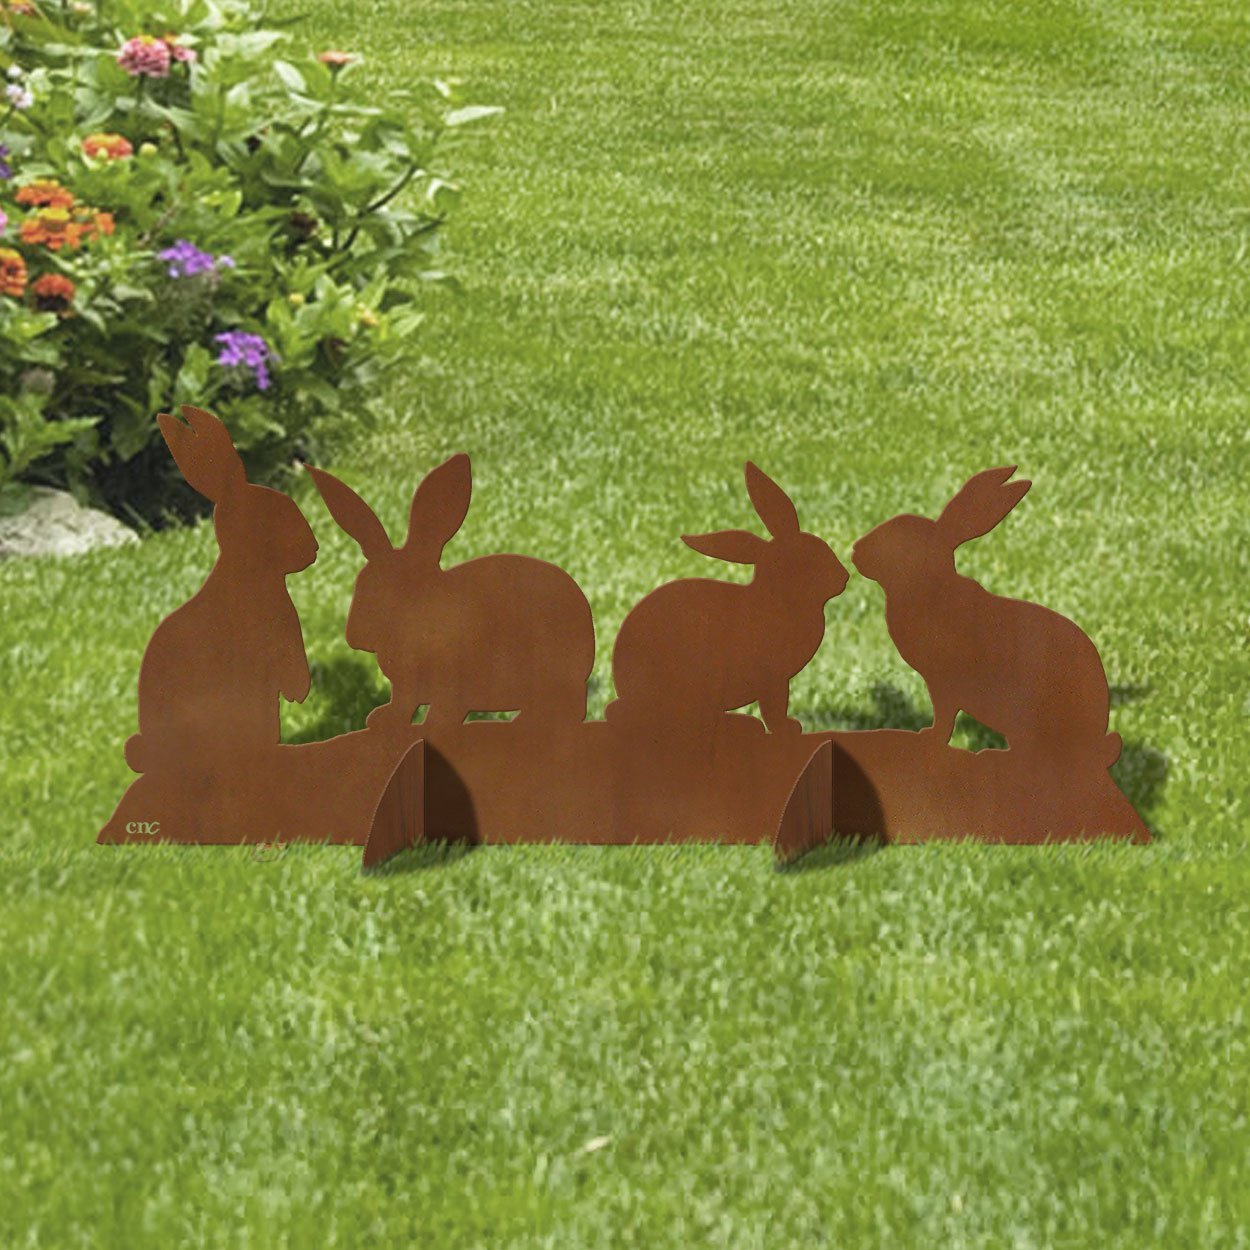 Rabbit Garden Ornament Lawn Patio Hare Sculpture Bunny Statue Home